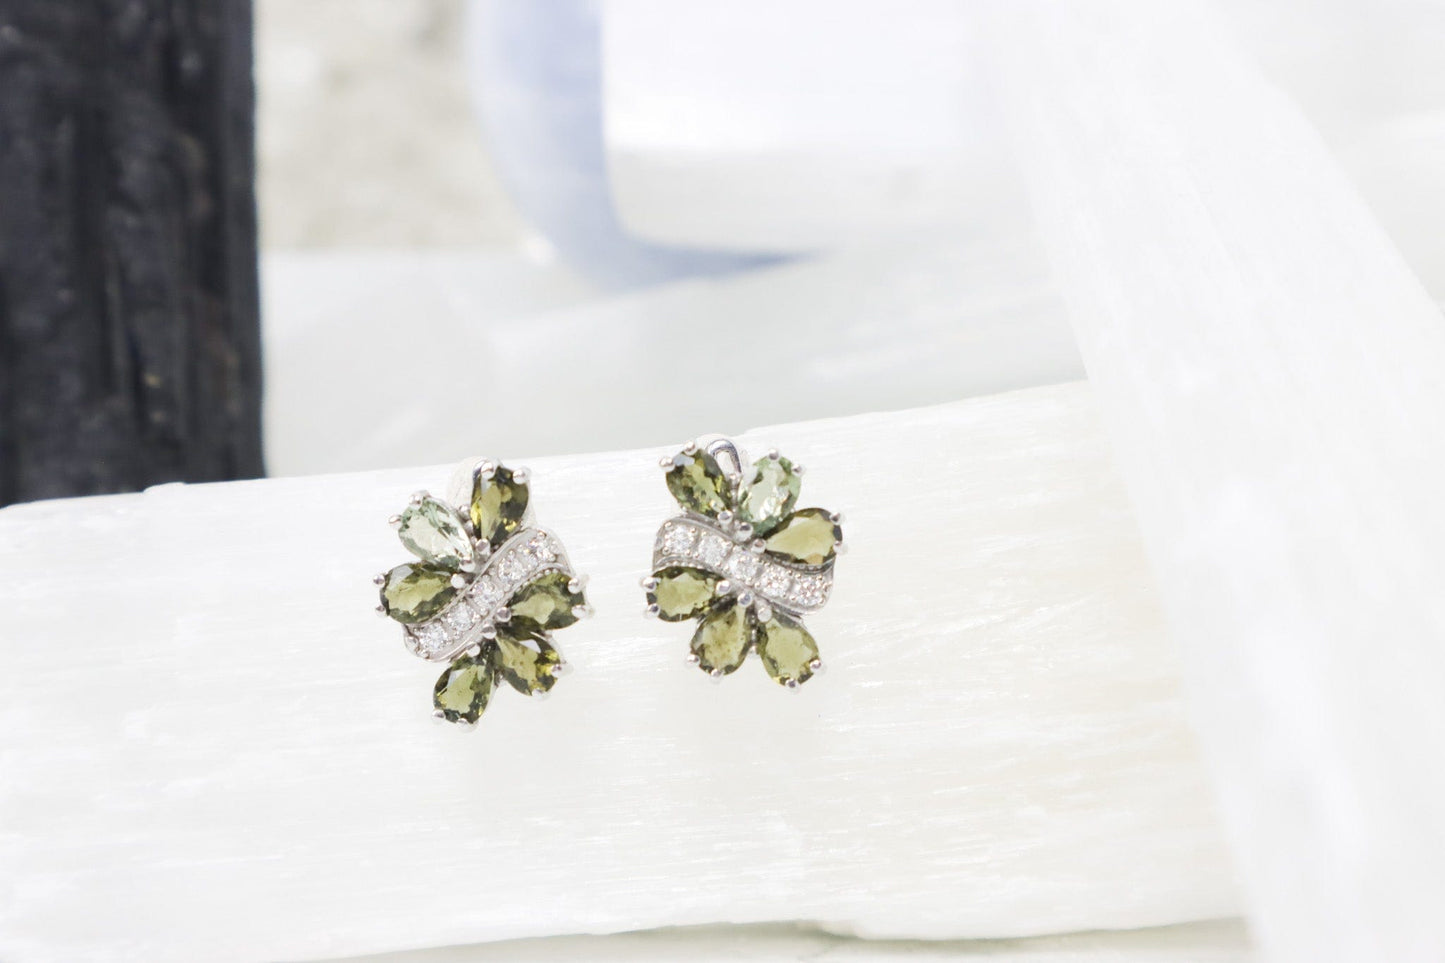 Moldavite Earrings 'Diana' - The Stone of Transformation Earrings Cubic Zirconia Tali & Loz